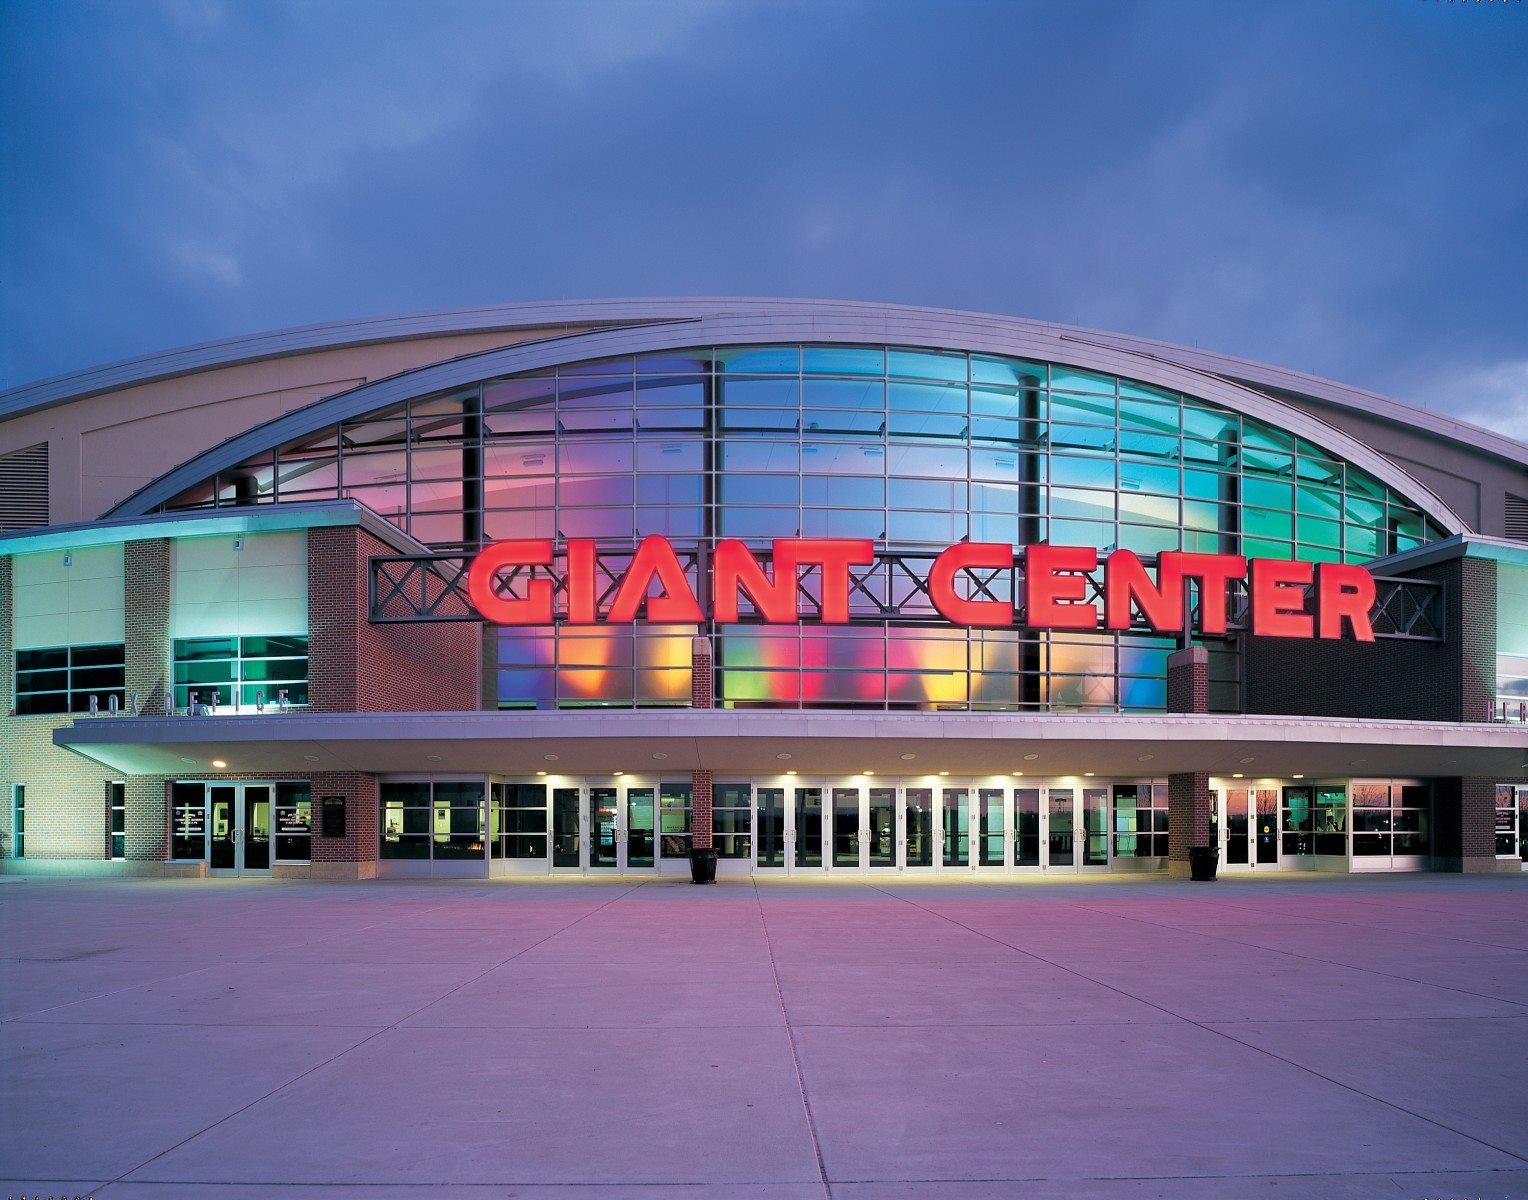 Giant Center (Hershey Bears)  Hershey bears, Stadium, Hockey